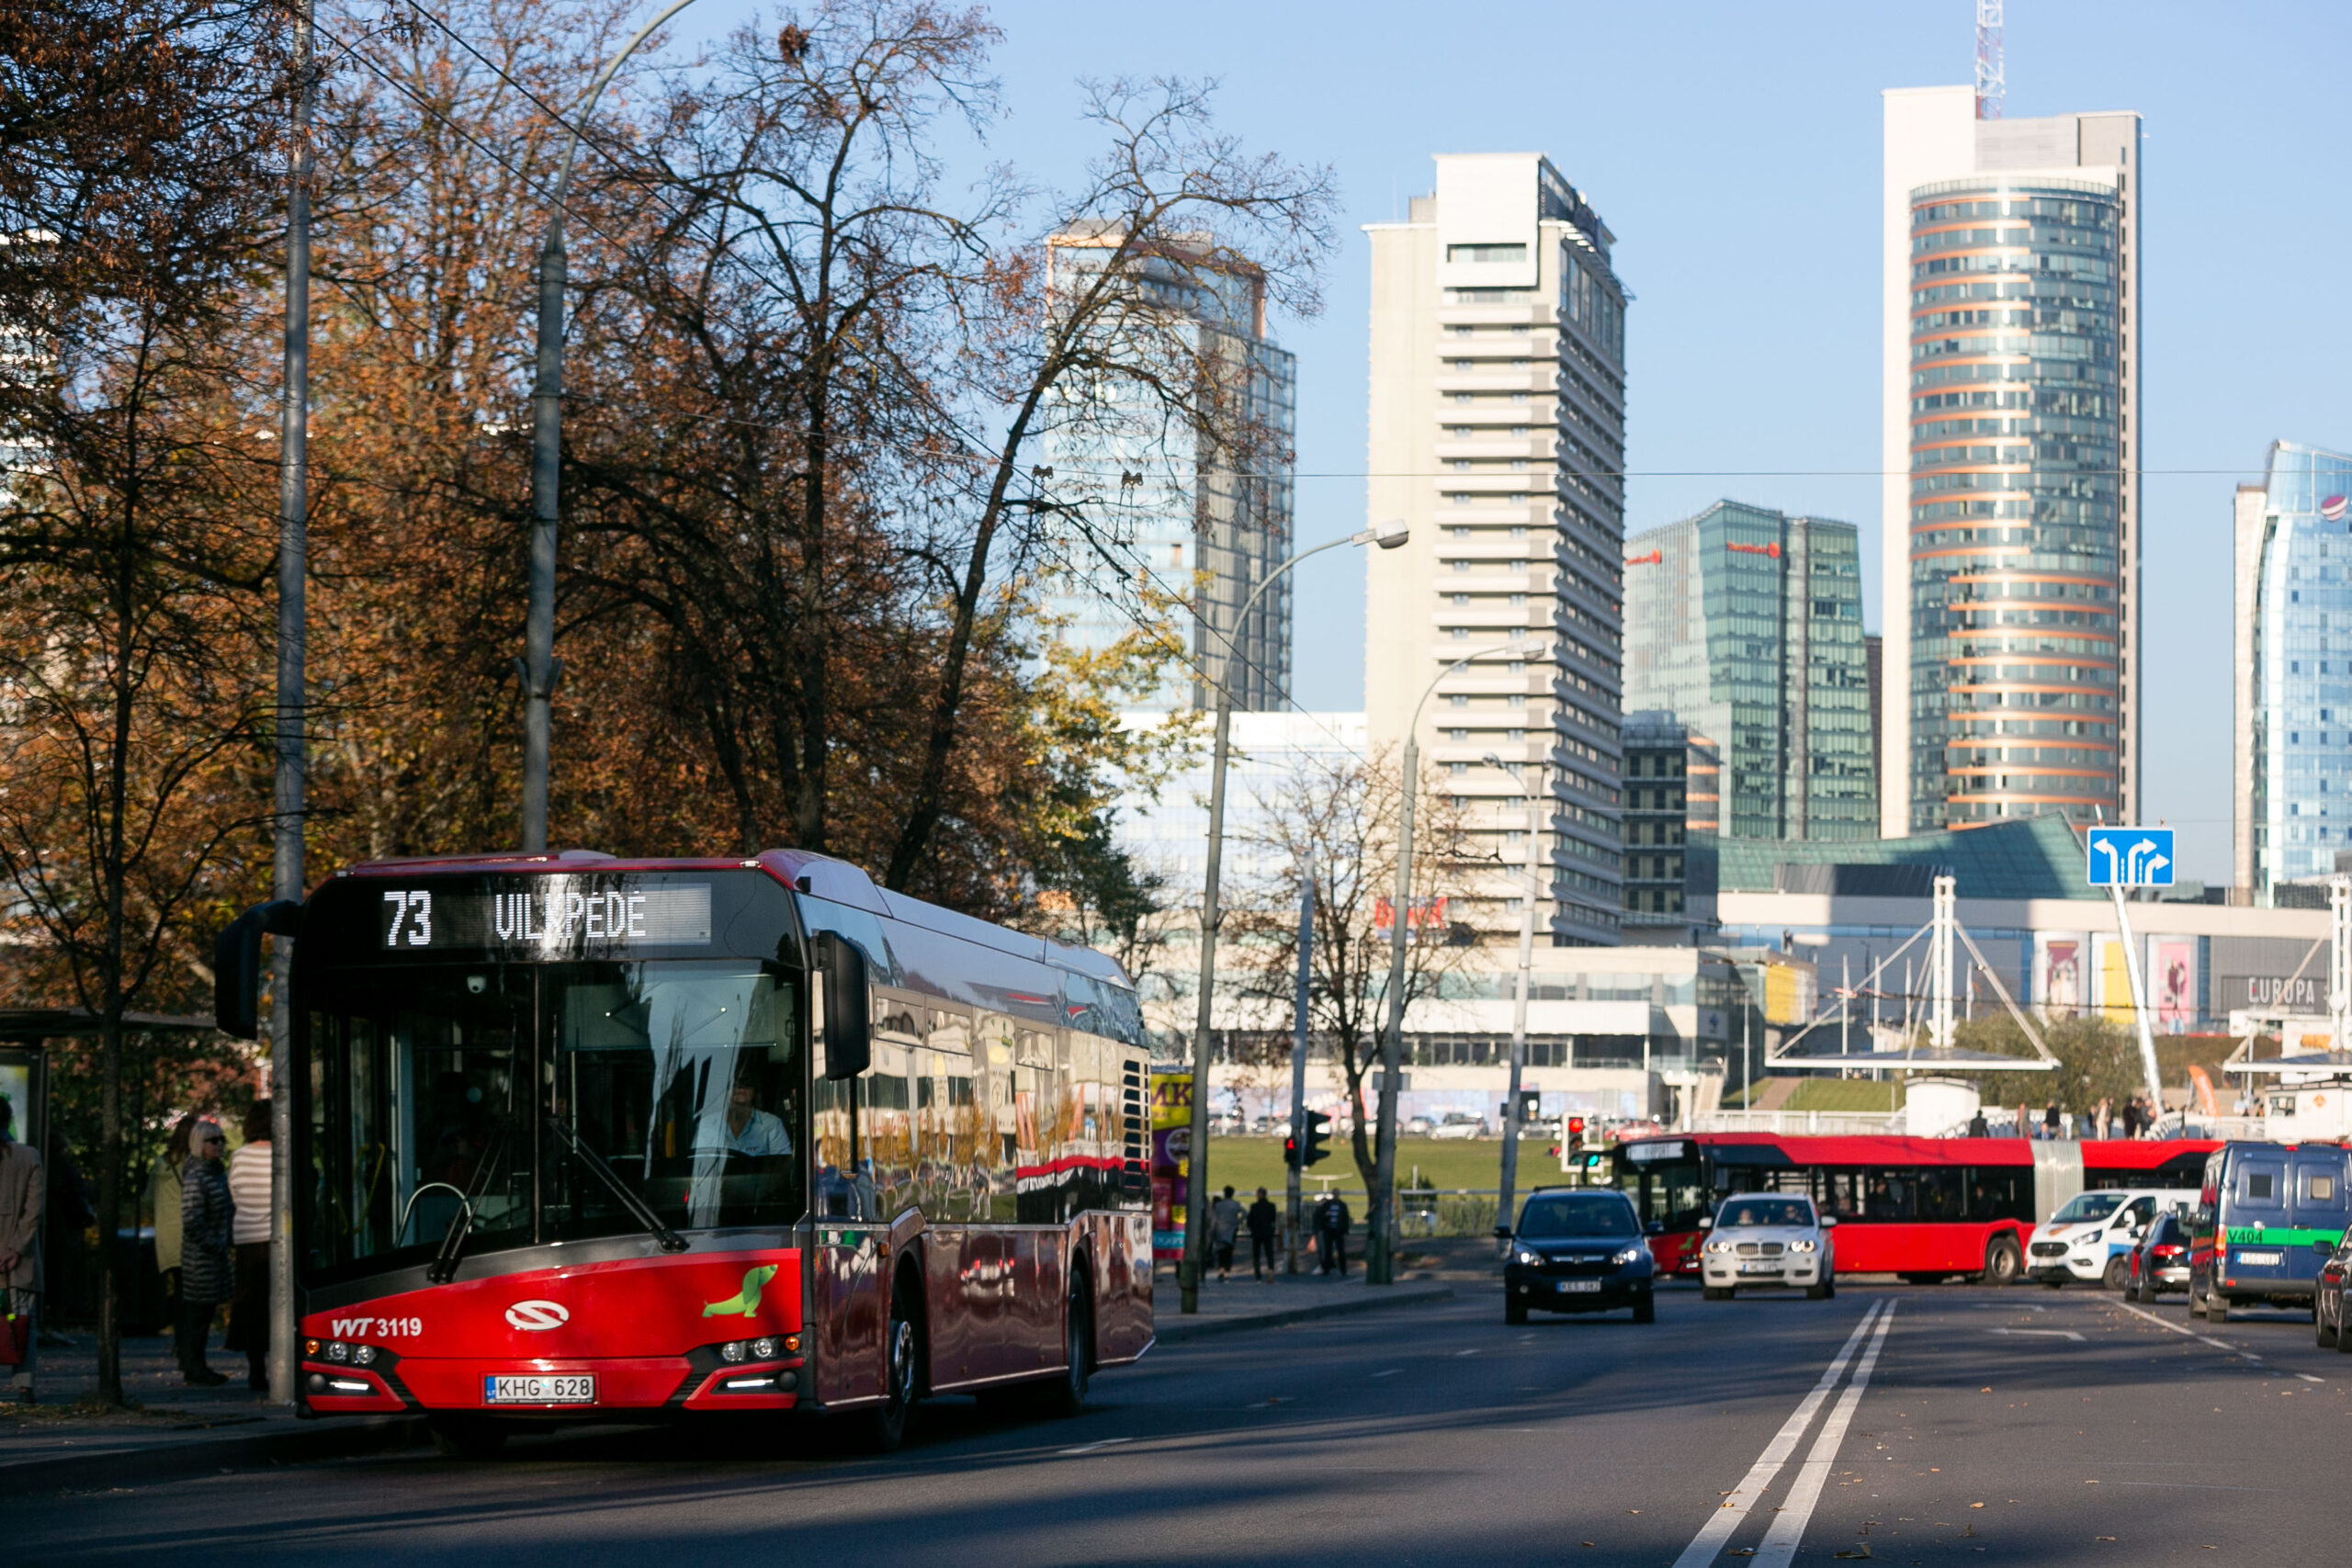 Rugsėjo 18 d. draudžiamas eismas Vytenio ir Naugarduko g., keisis 73 maršruto autobusų judėjimas